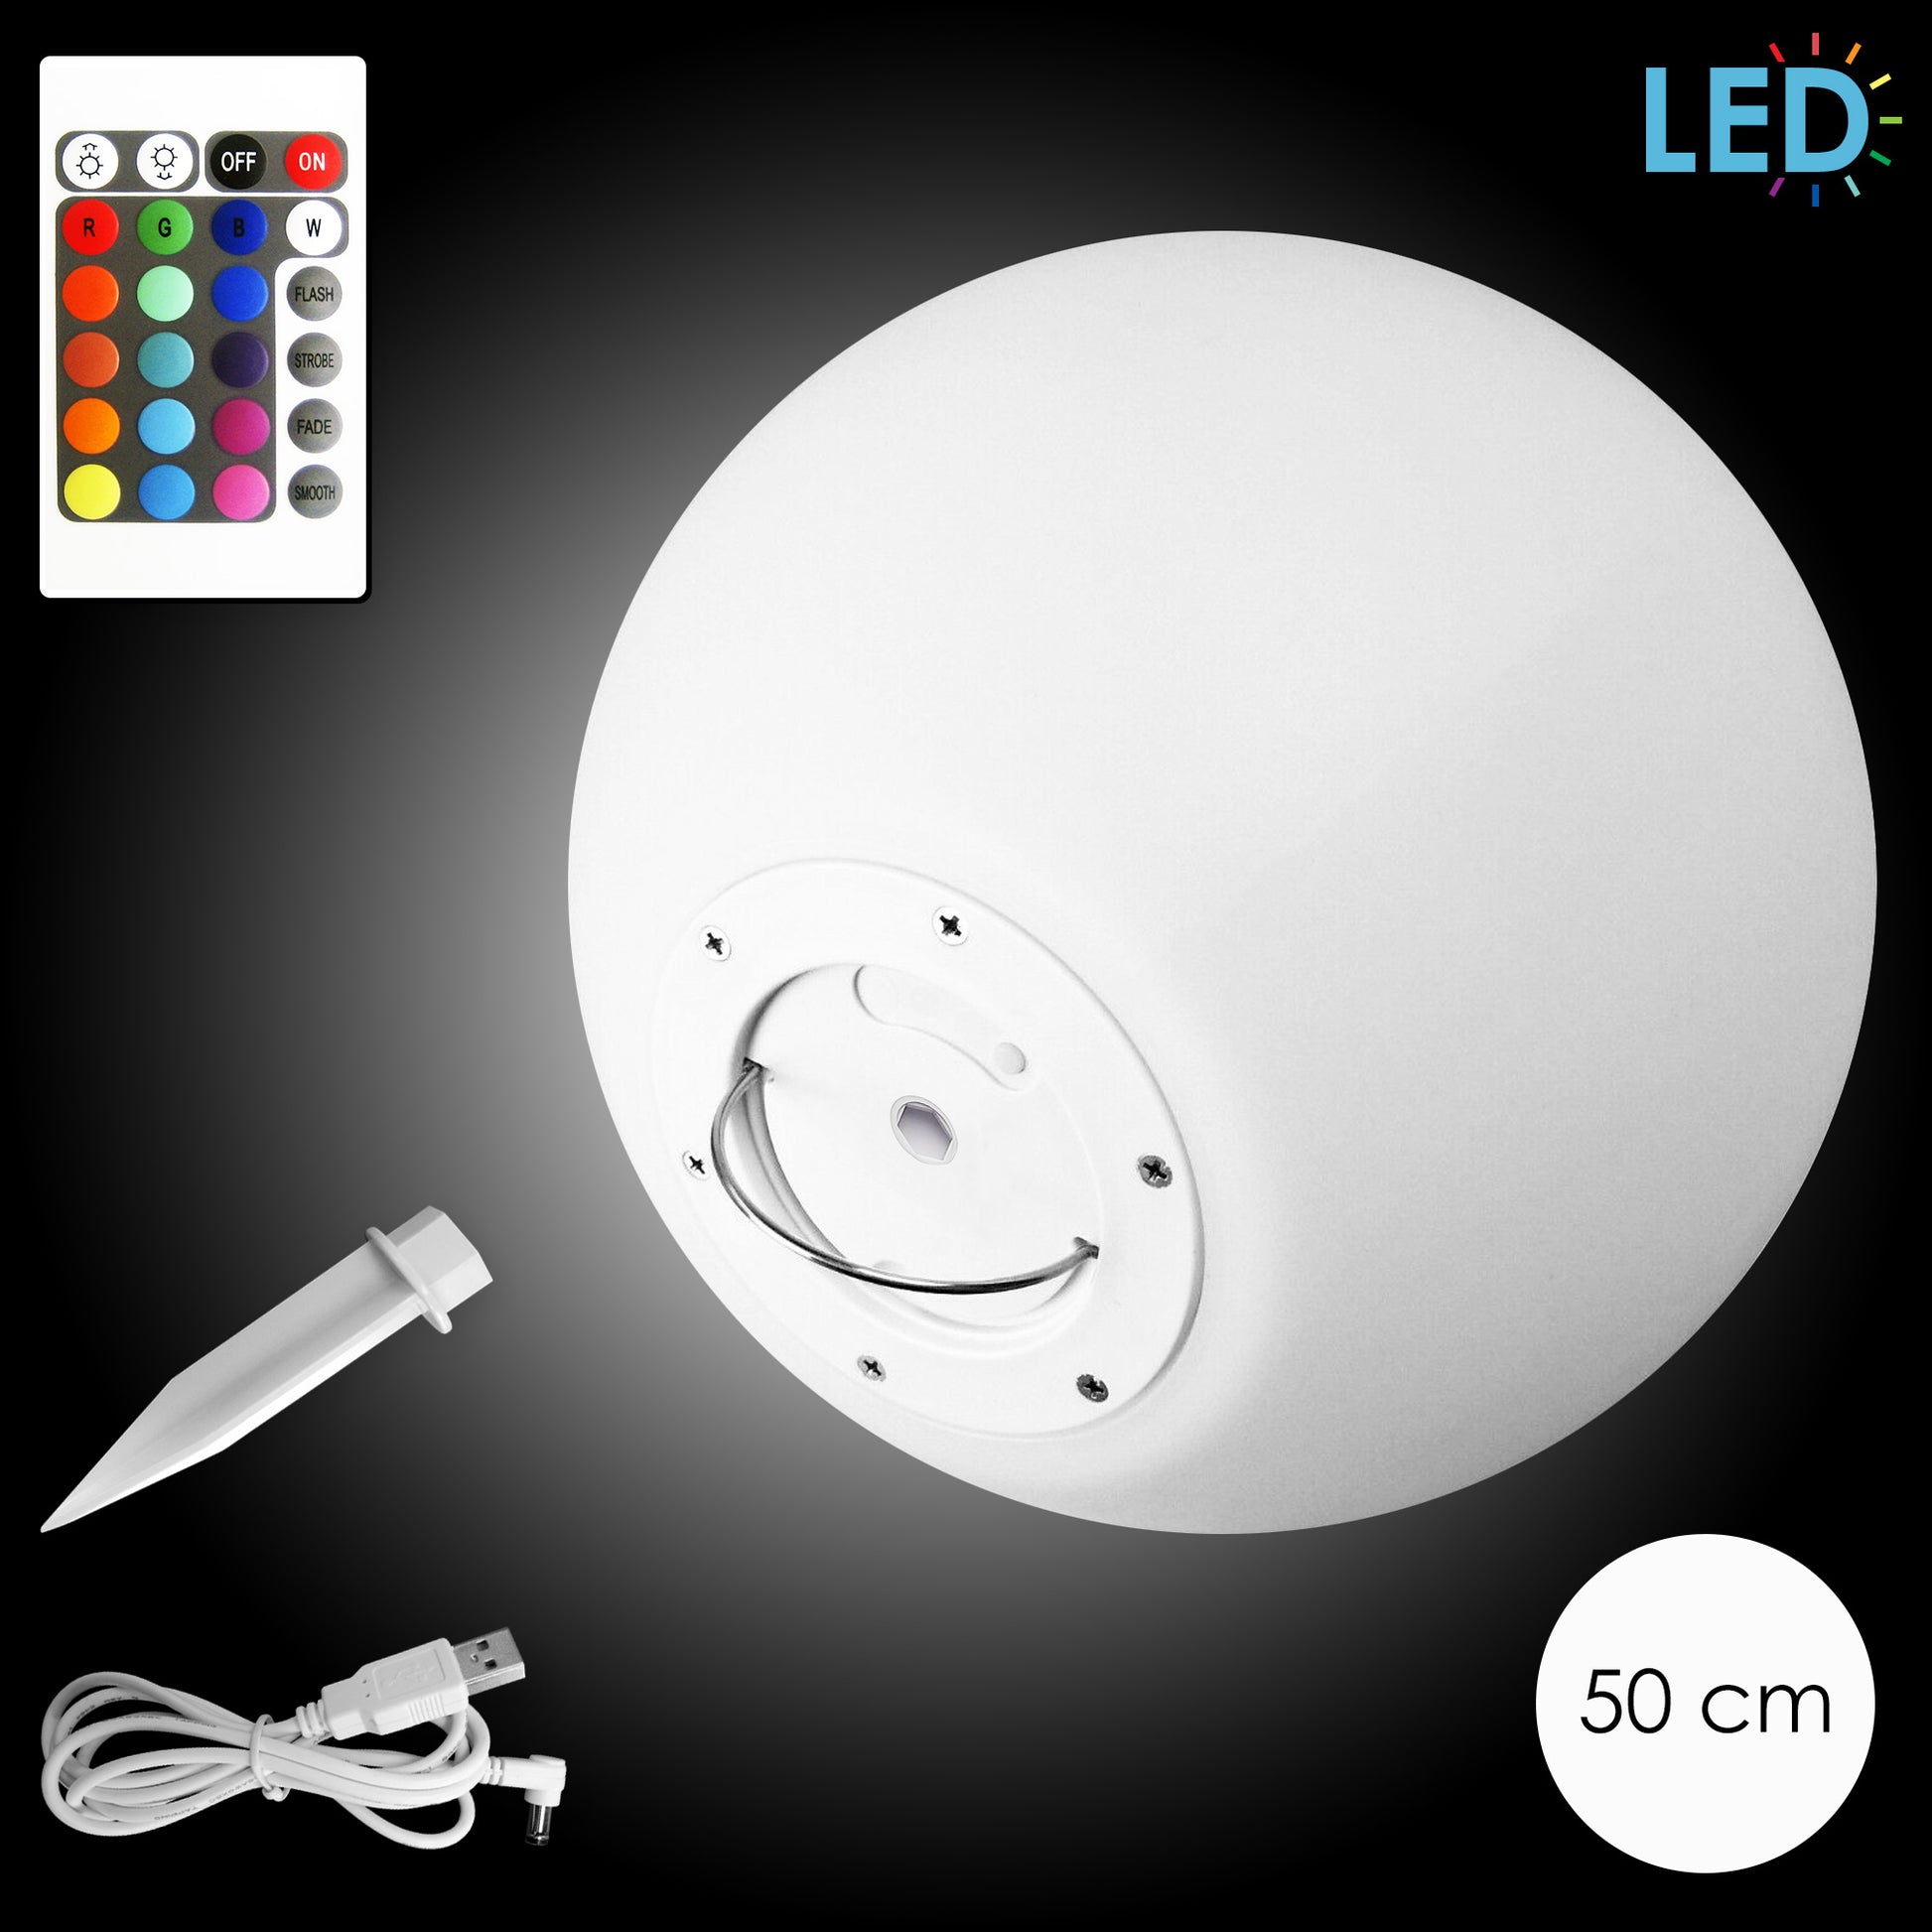 LED Outdoor Tisch-Lampe kabellos mit 2000 mAh Akku Leuchte USB aufladbar;  wasserdichte Außen-Tischleuchte (LED-Lampe mit Fernbedienung) : :  Beleuchtung